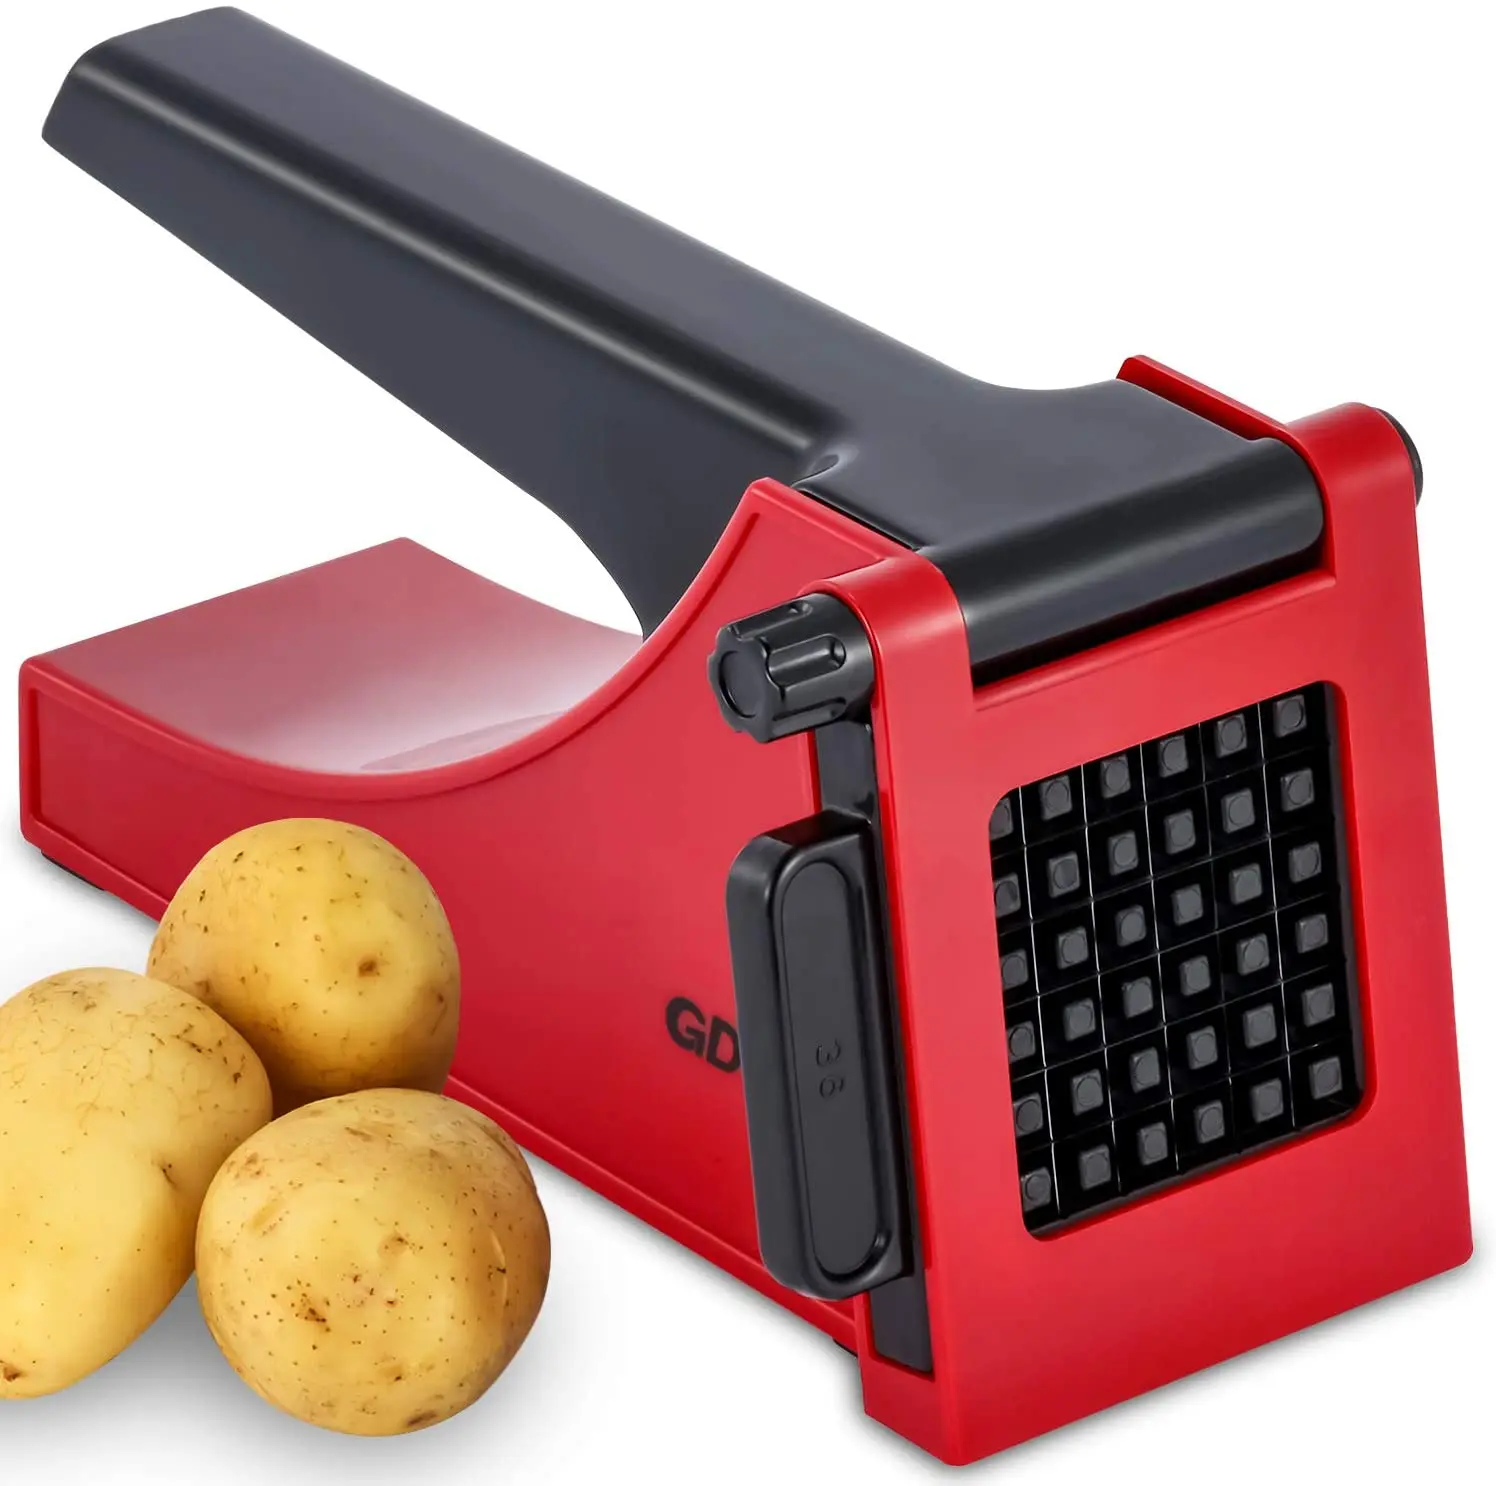 

CL434 Stainless Steel Potato Strip Maker Manual Potato Chip Slicer Kitchen Fruit Vegetable Chopper Shredder French Fries Maker, Red